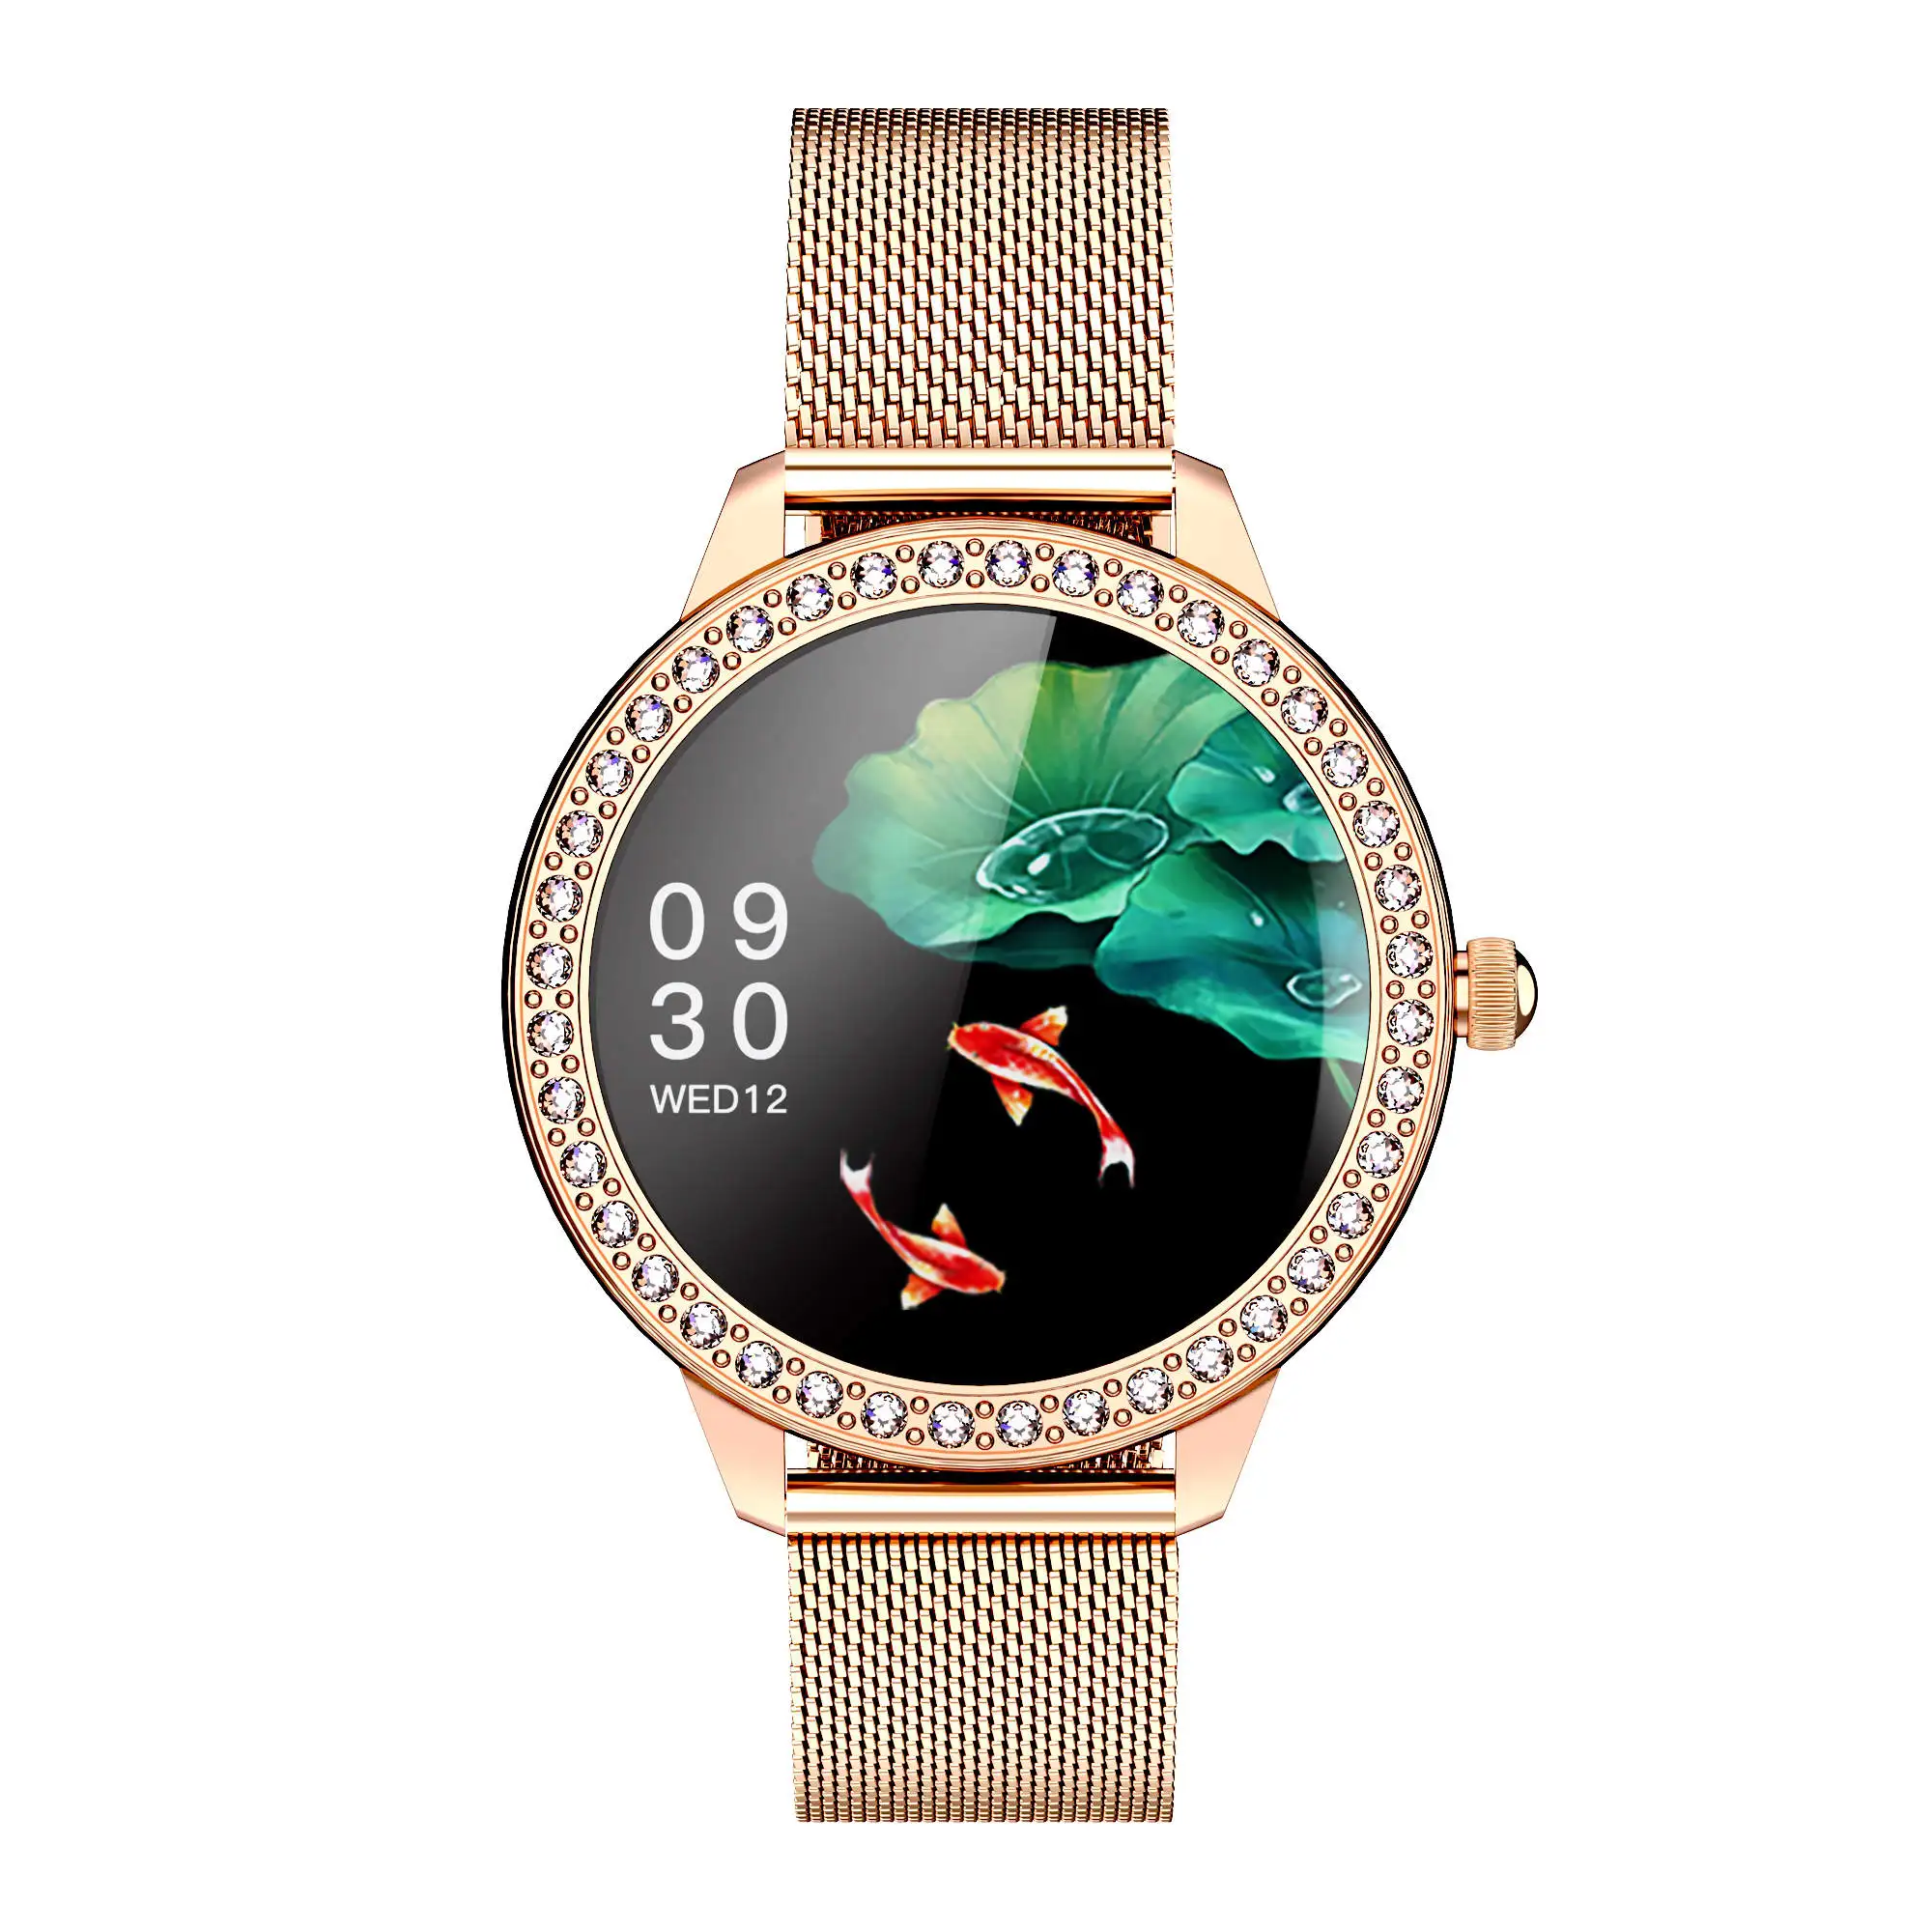 Women Smart Watch Ak15 Luxury Fashion Smart Bracelet Heart Rate Waterproof  Fitness Tracker For Android Ios Phones Pk H8 Kw10 W8  Wristbands   AliExpress